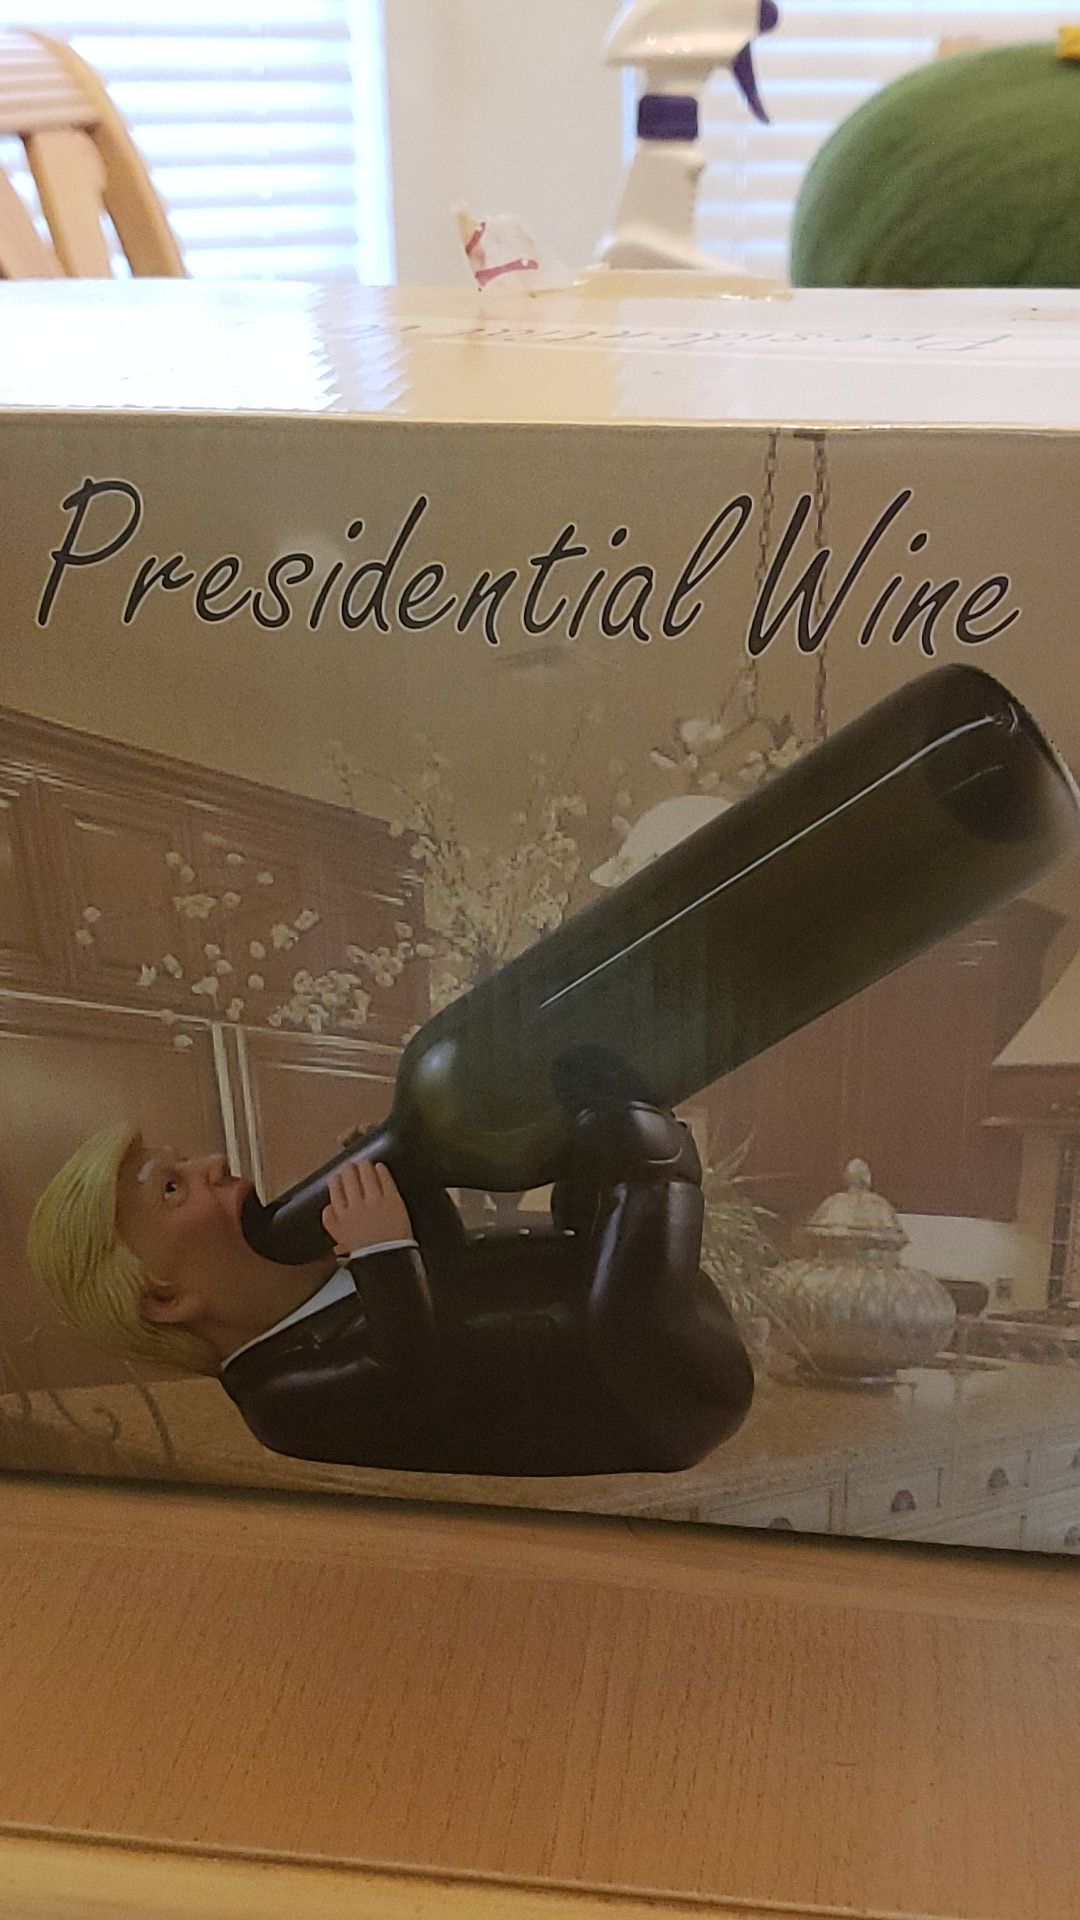 Trump wine bottle holder kitchen decoration